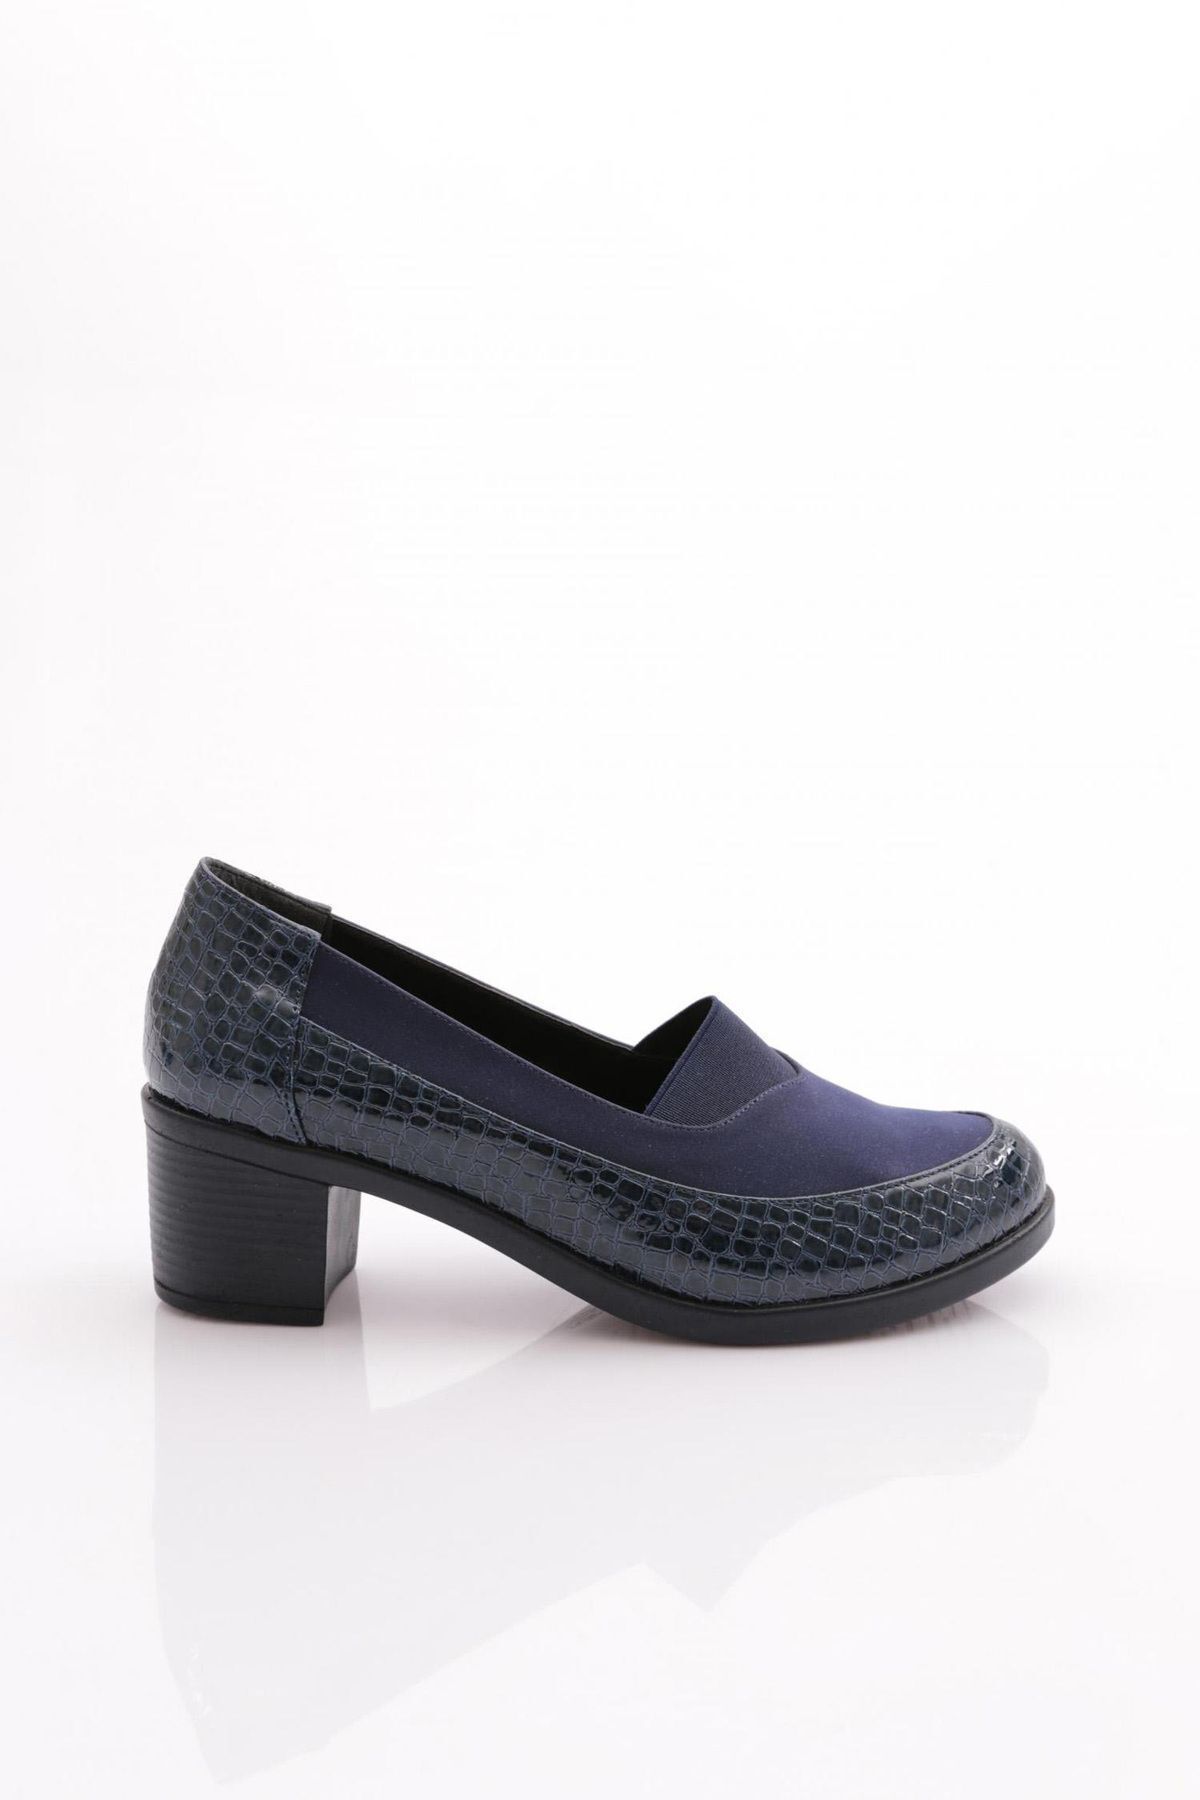 Dgn 23021 Kadın Topuklu Ayakkabı Lacivert Kroko